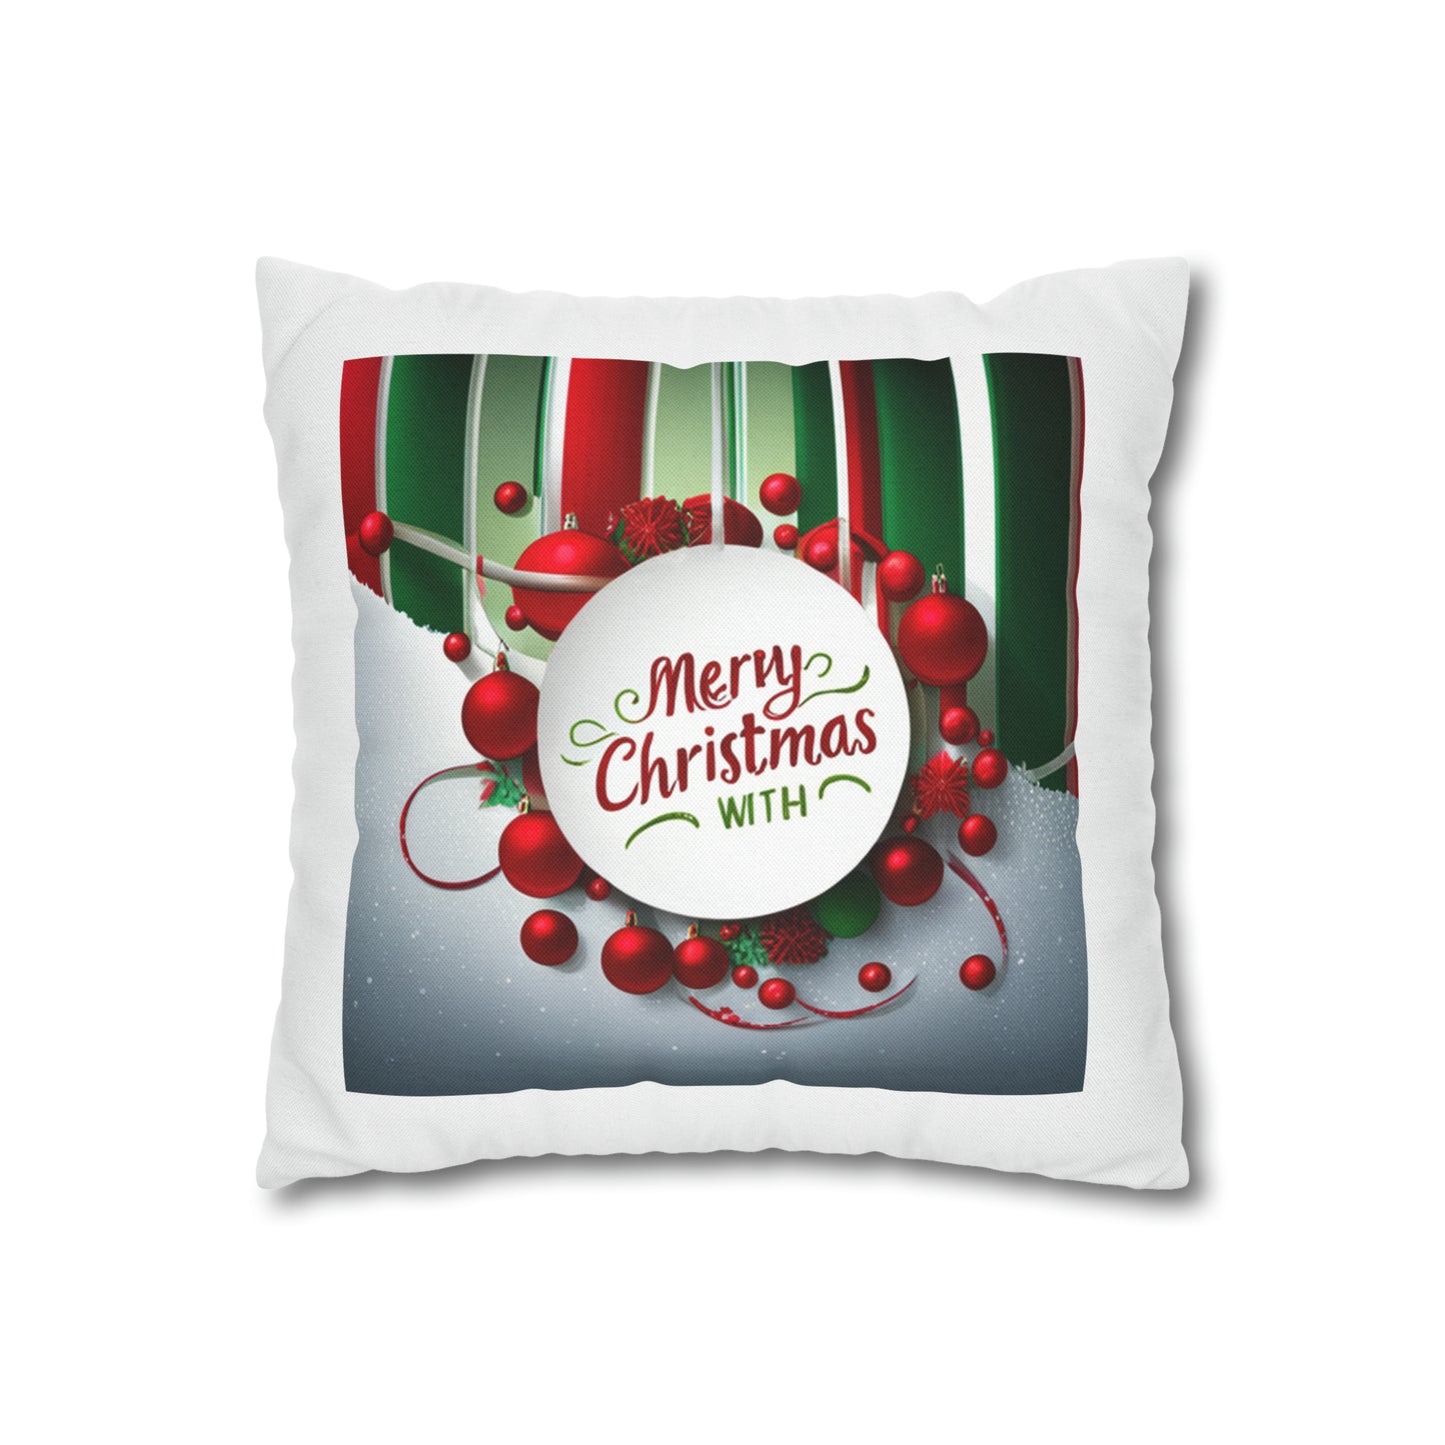 Merry Christmas Pillow Case Spun Polyester Square Pillow Case Holiday Season Pillow Case